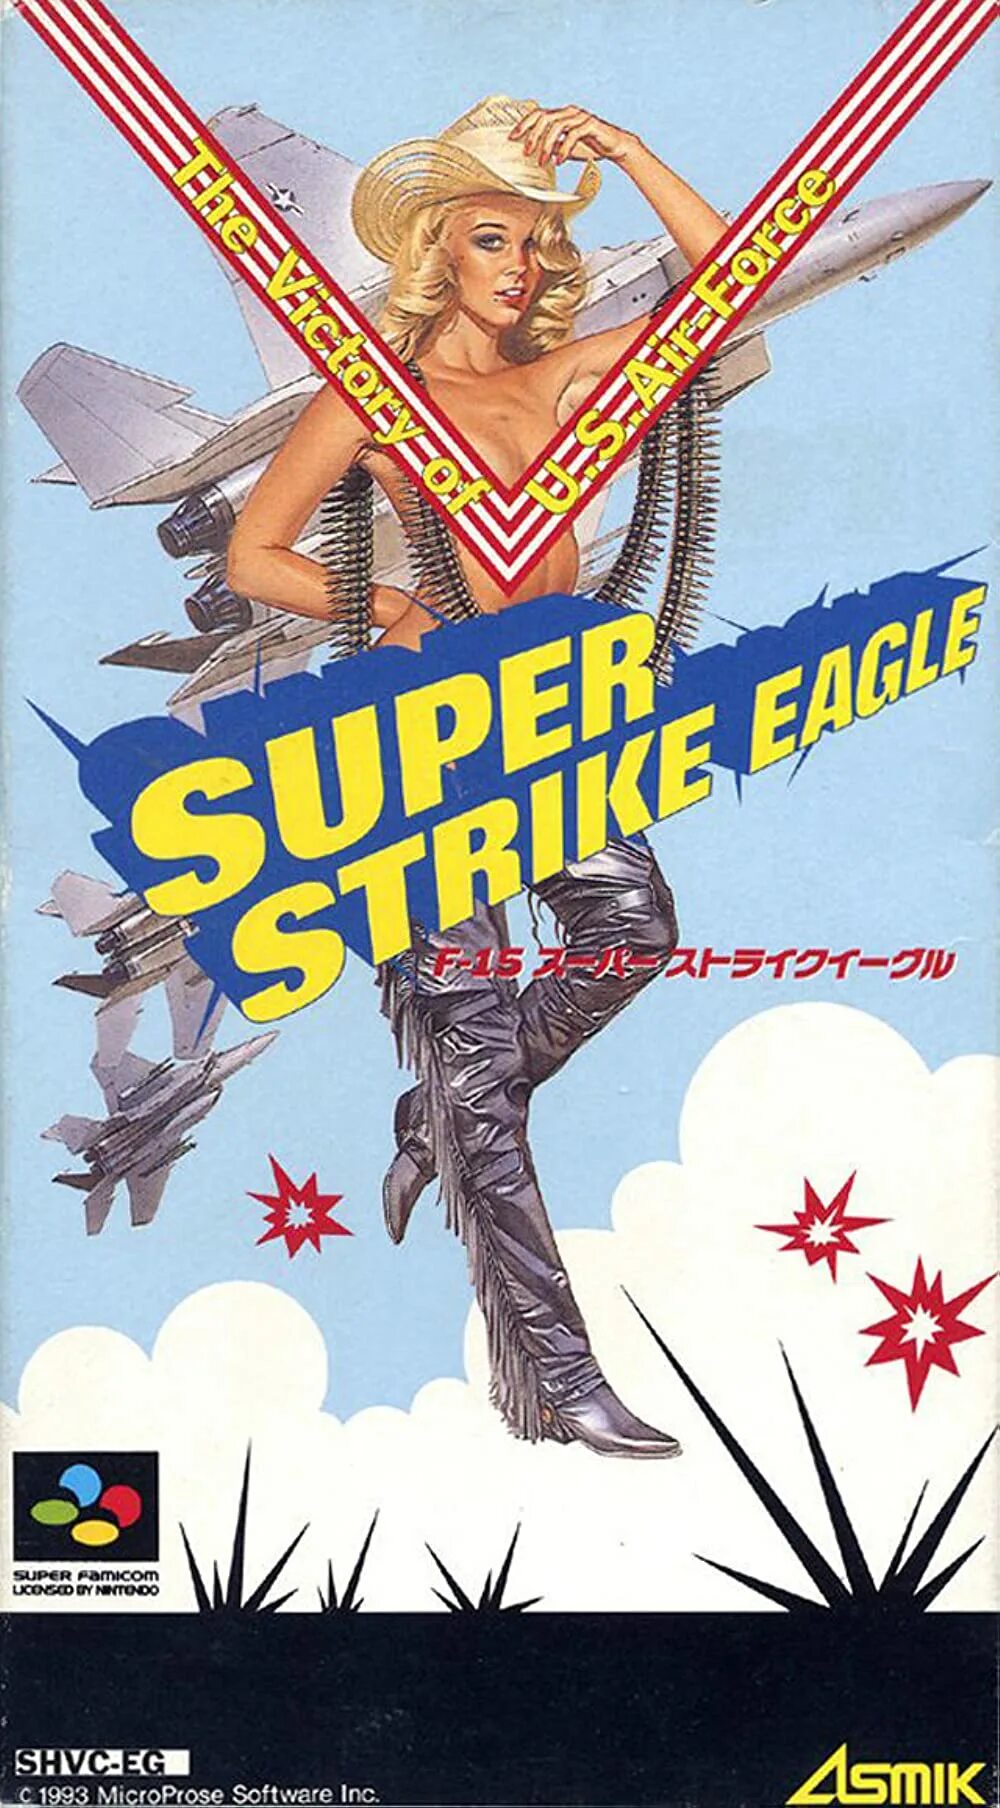 Супер страйк. Super Strike Eagle NES. Super Strike Eagle Snes 1993. F-15 super Strike Eagle Snes. Super Strikes.